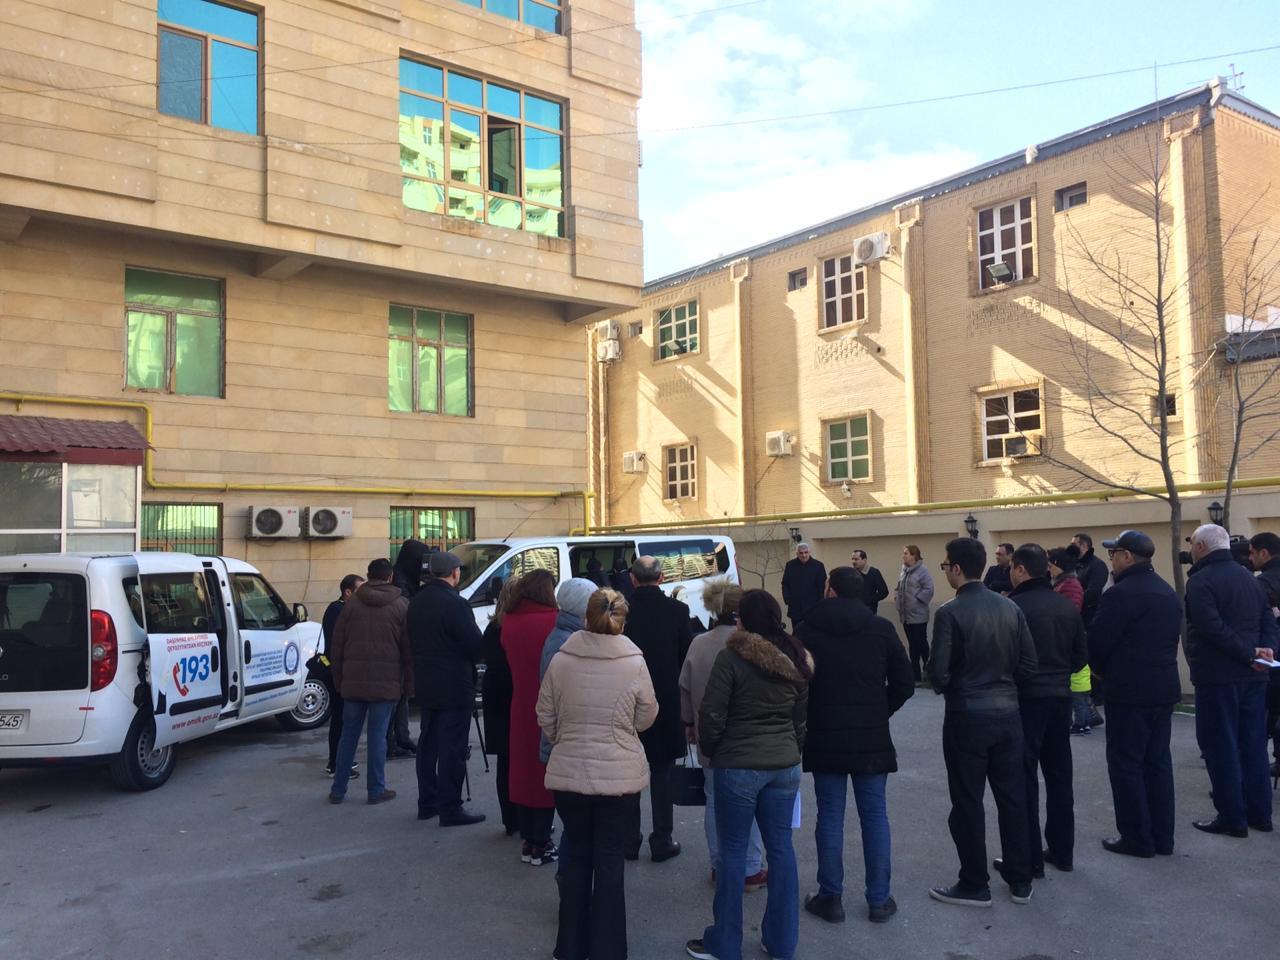 В Баку прошла акция массовой выдачи "купчих" (ФОТО)